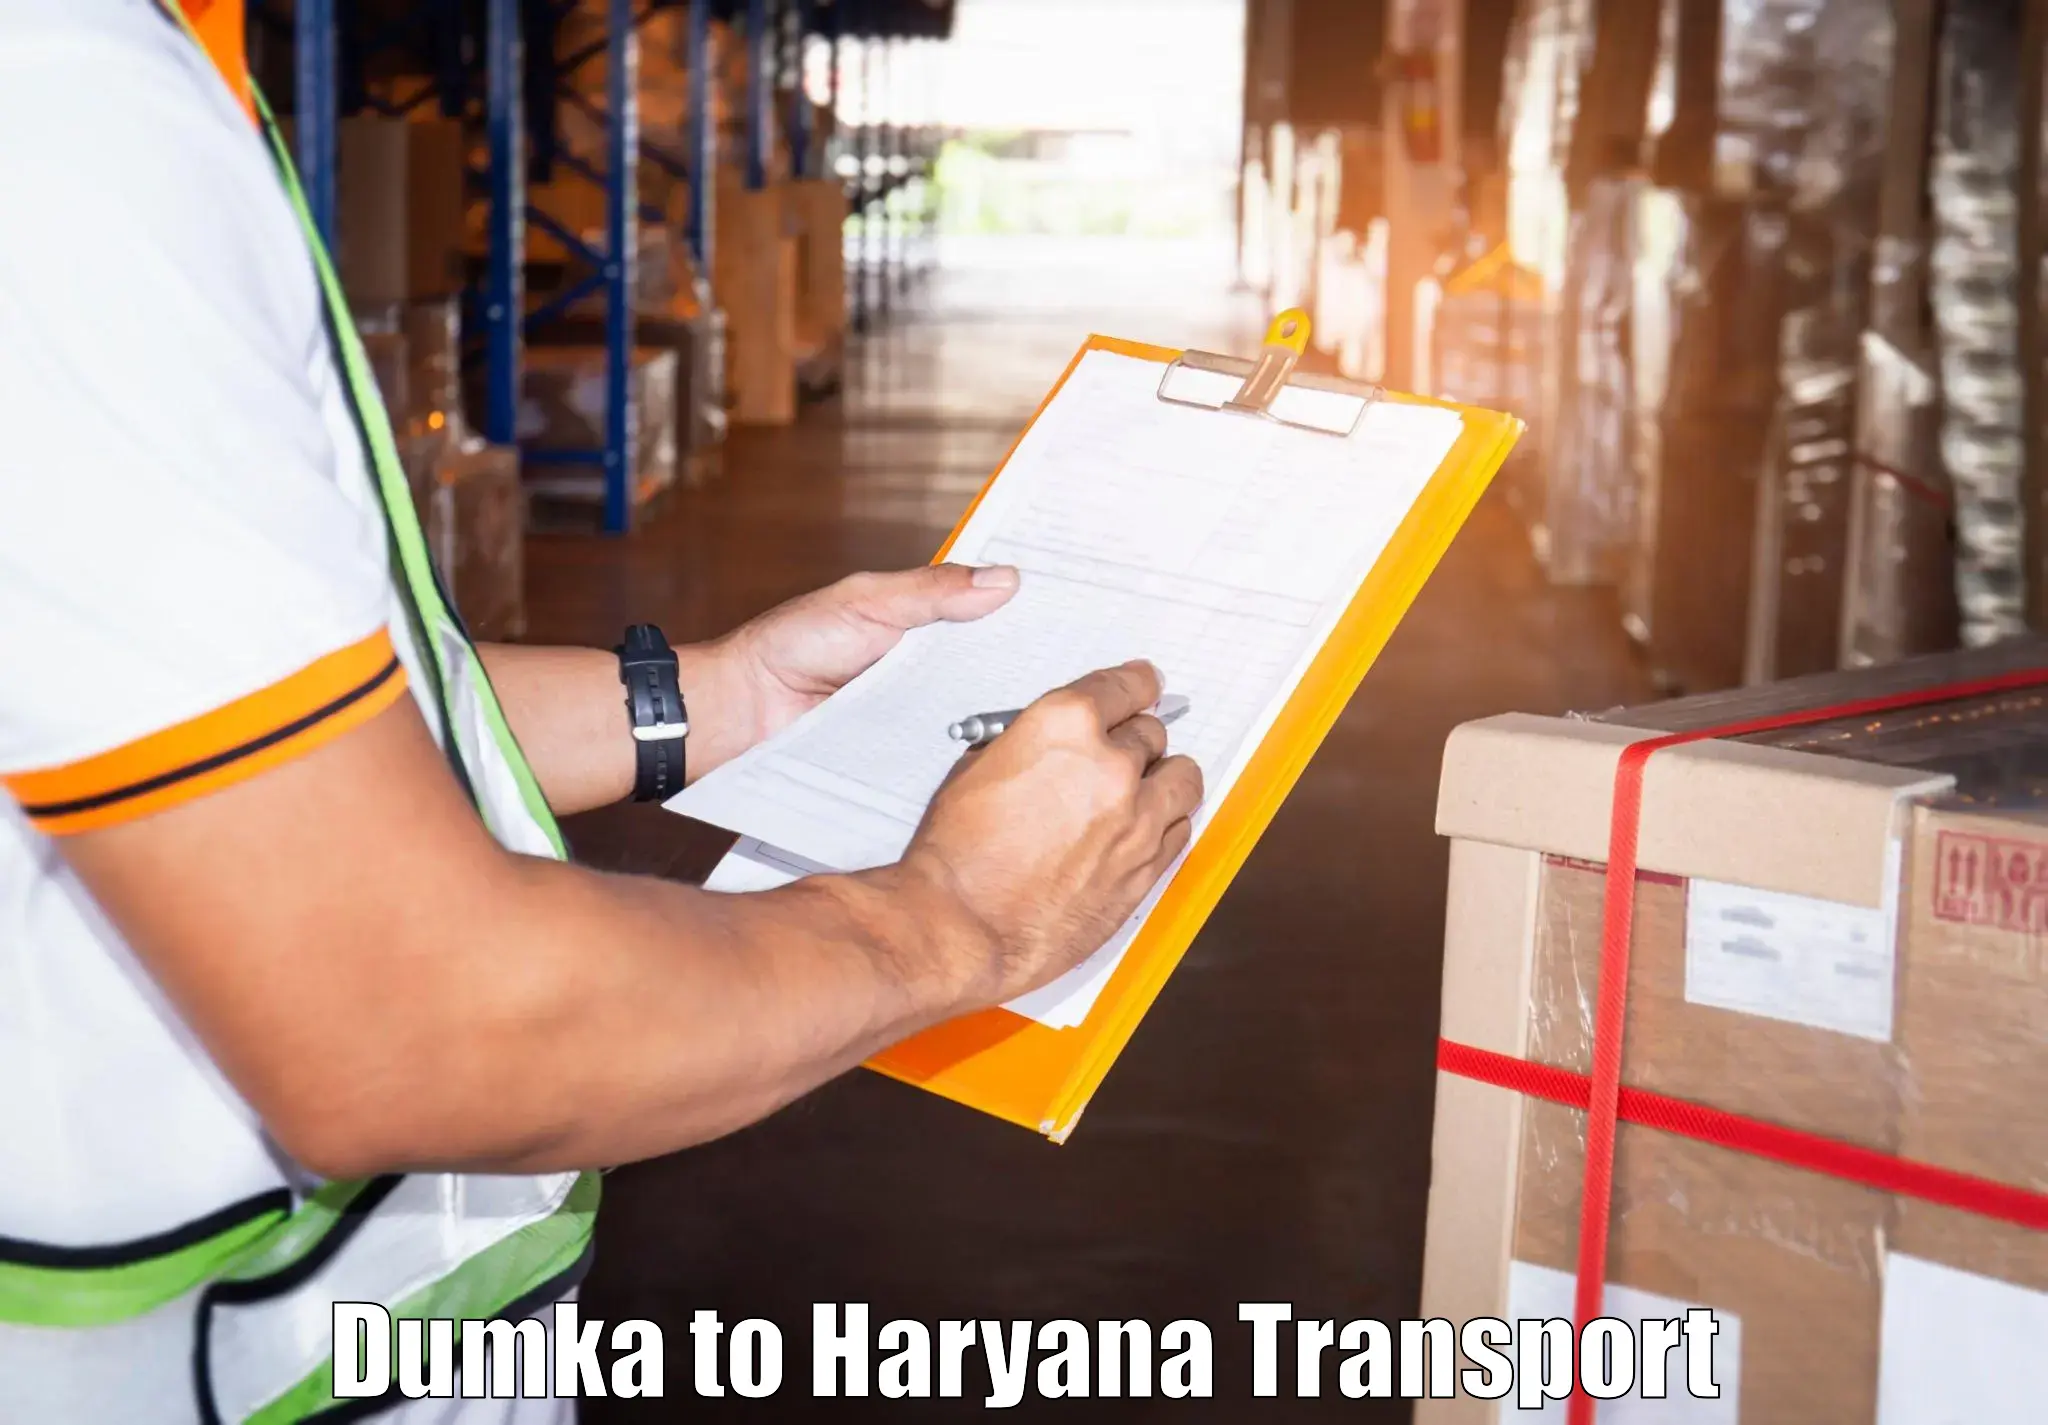 Commercial transport service Dumka to Jind